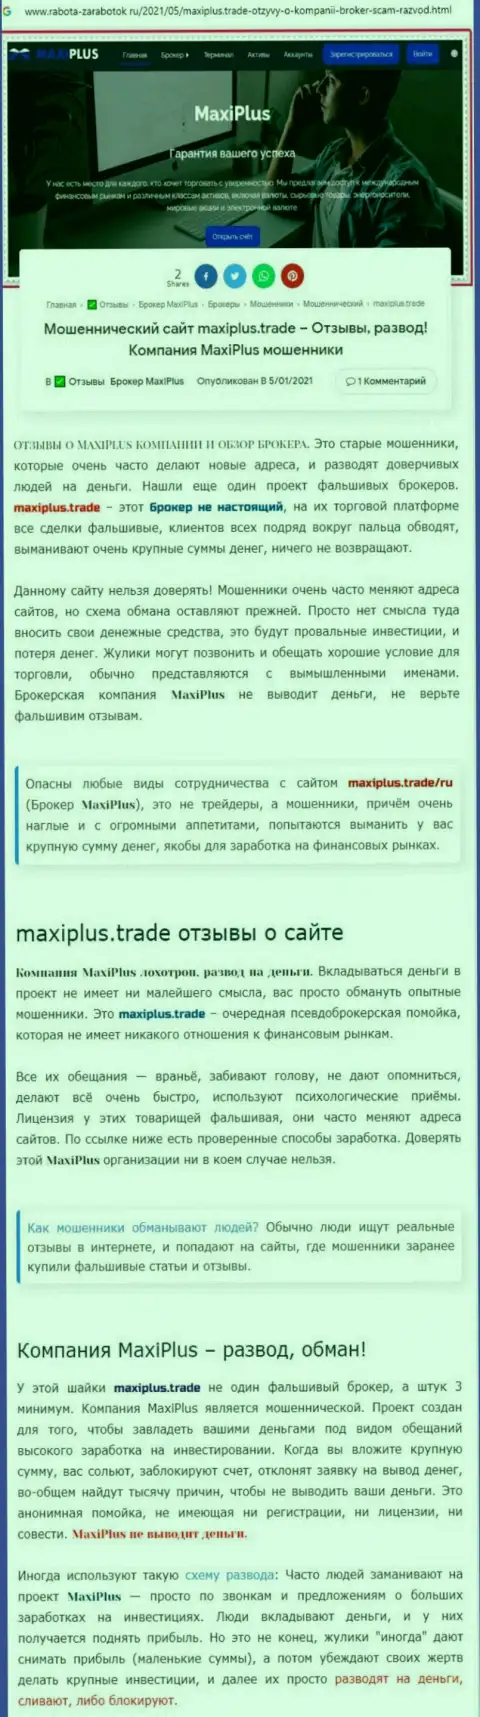 Maxi Plus - это МОШЕННИКИ ! Принципы работы КИДАЛОВА (обзор деятельности)